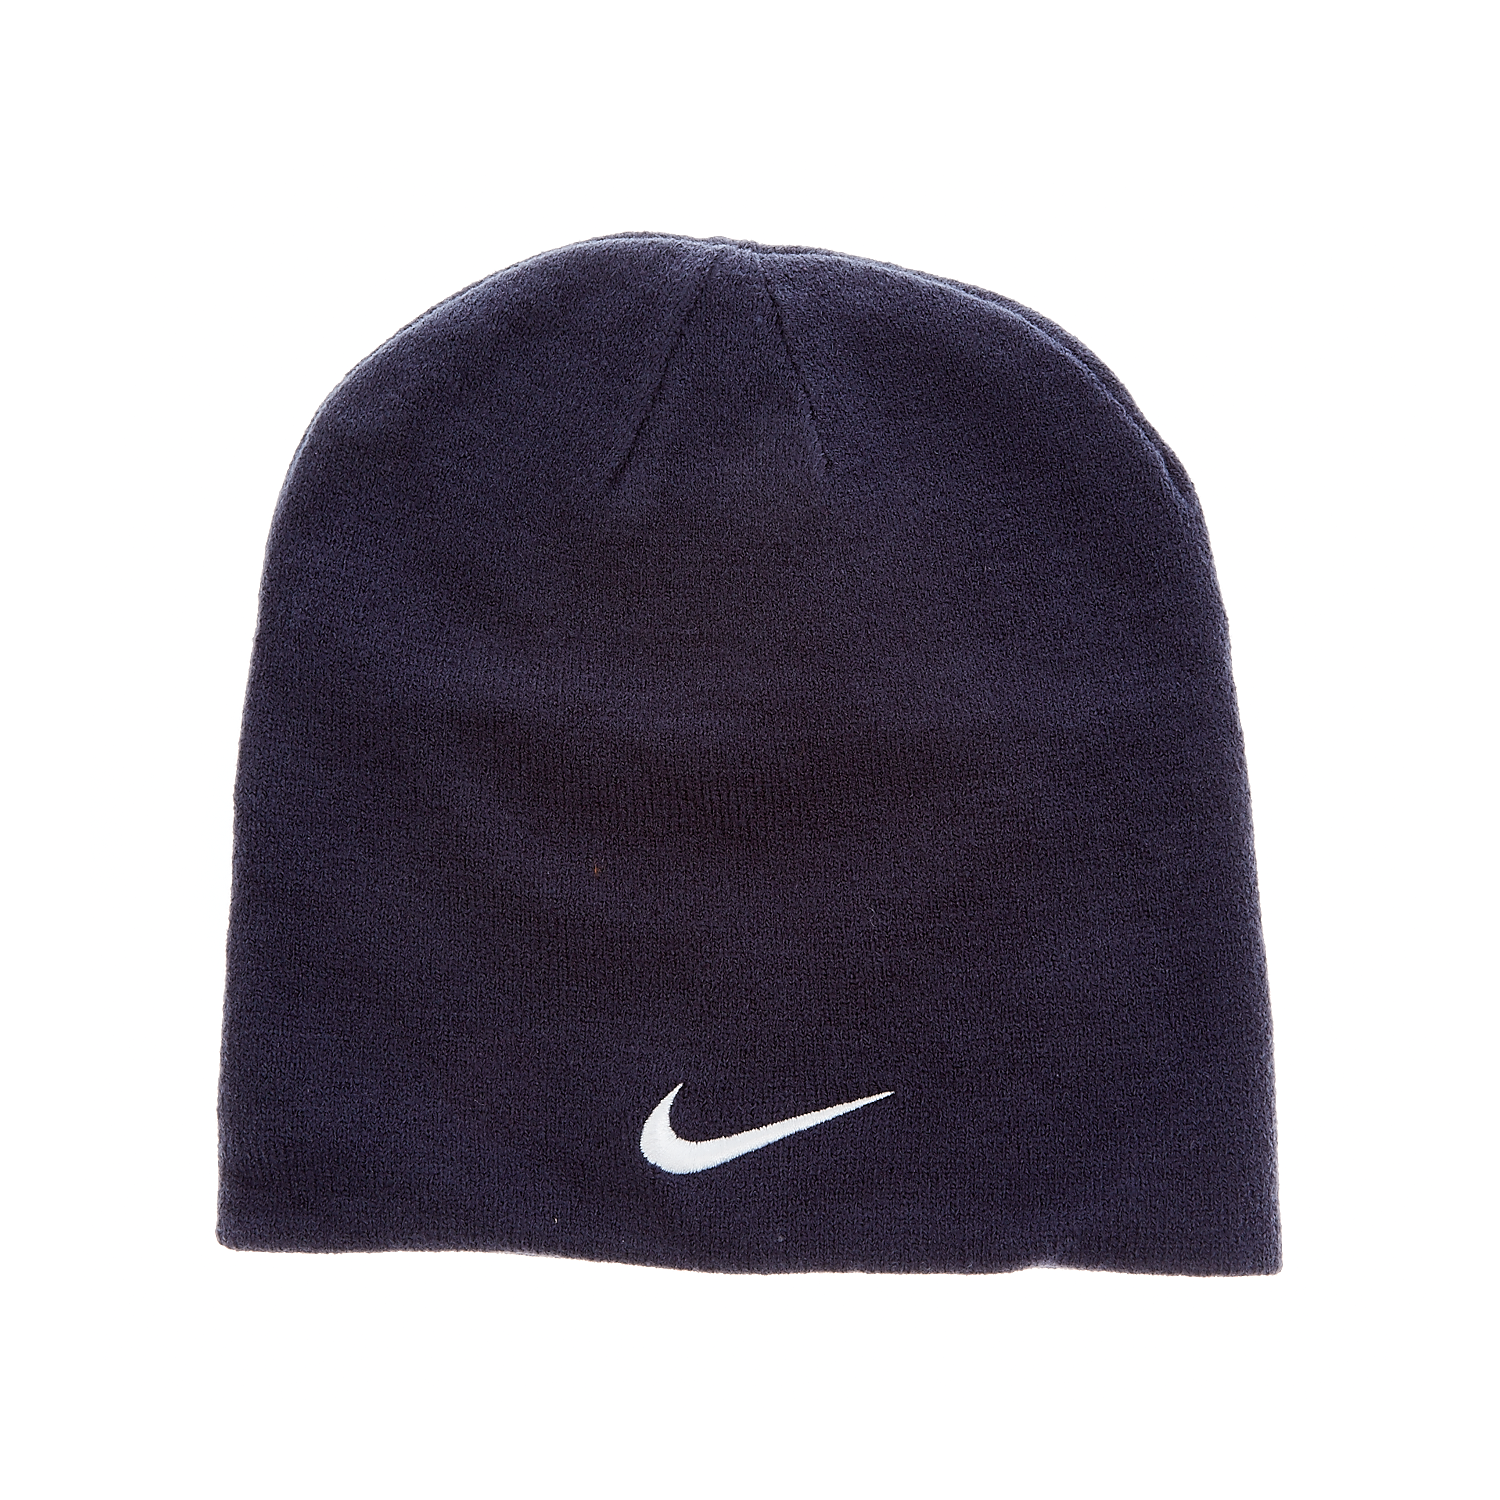 Γυναικεία/Αξεσουάρ/Καπέλα/Αθλητικά NIKE - Σκούφος Nike μπλε